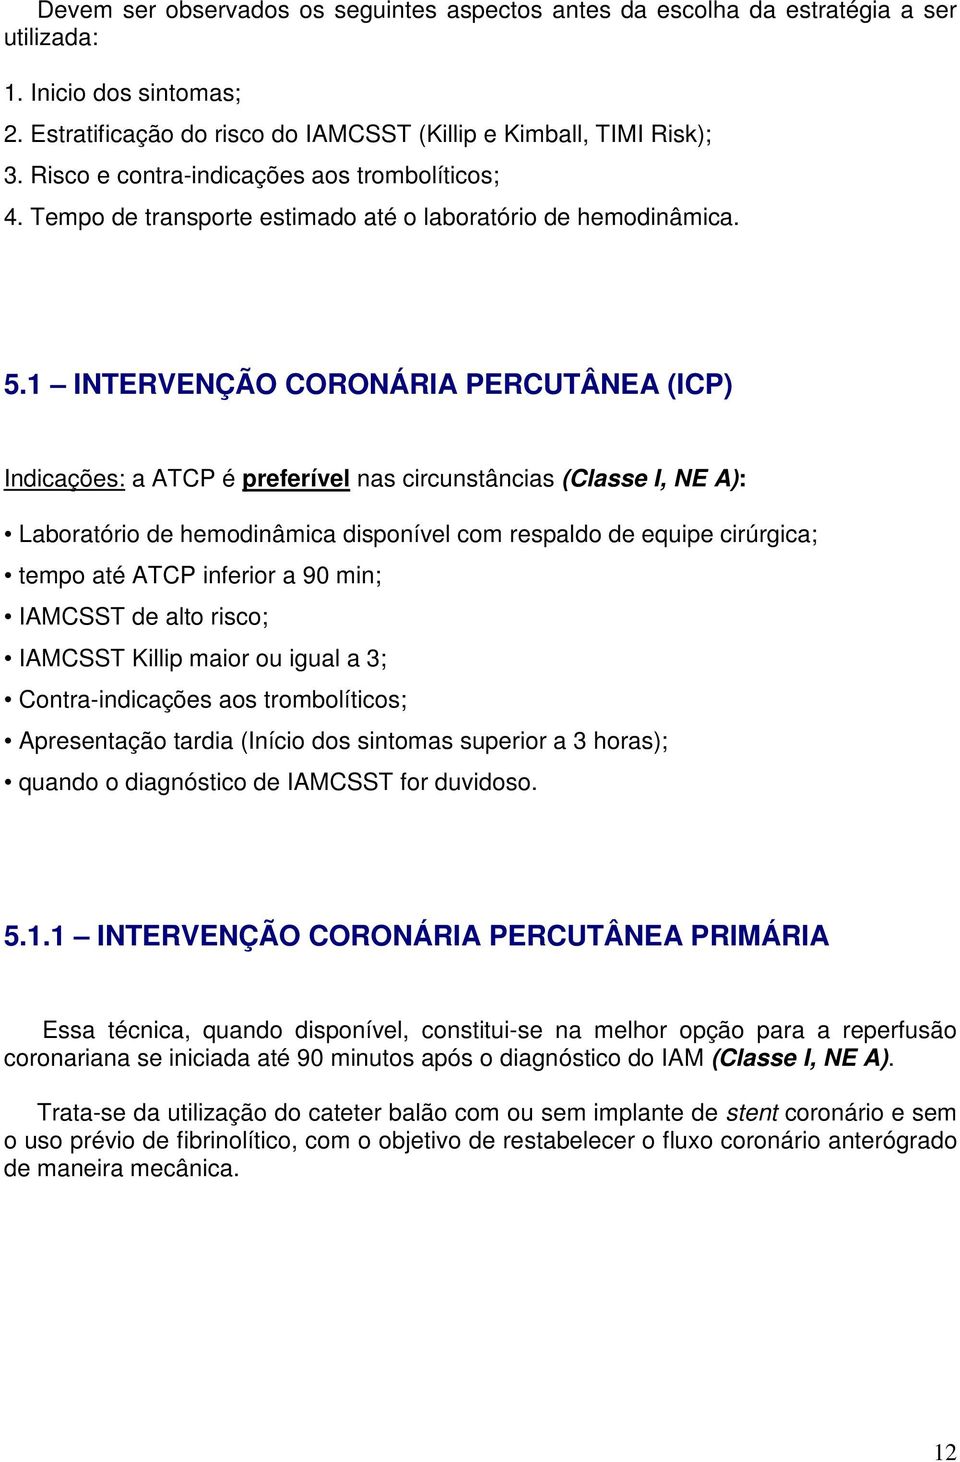 1 INTERVENÇÃO CORONÁRIA PERCUTÂNEA (ICP) Indicações: a ATCP é preferível nas circunstâncias (Classe I, NE A): Laboratório de hemodinâmica disponível com respaldo de equipe cirúrgica; tempo até ATCP